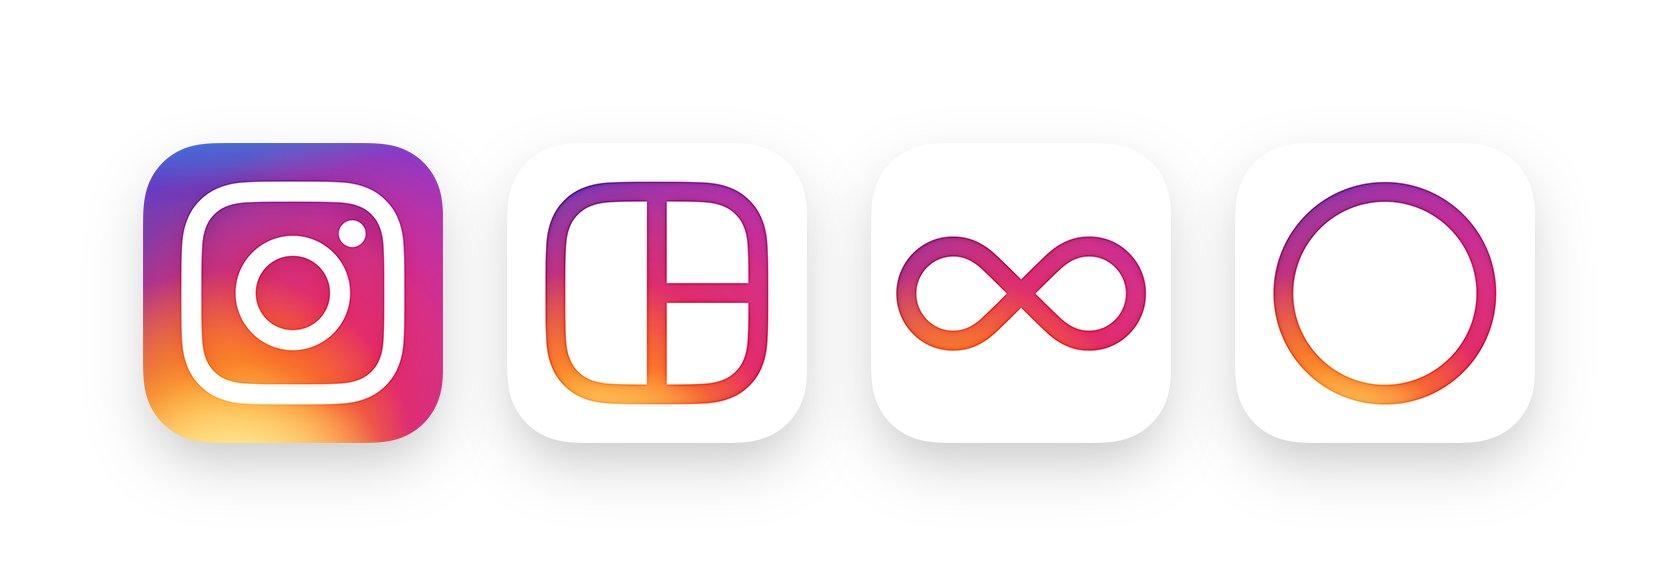 Instagram Suite App Icons